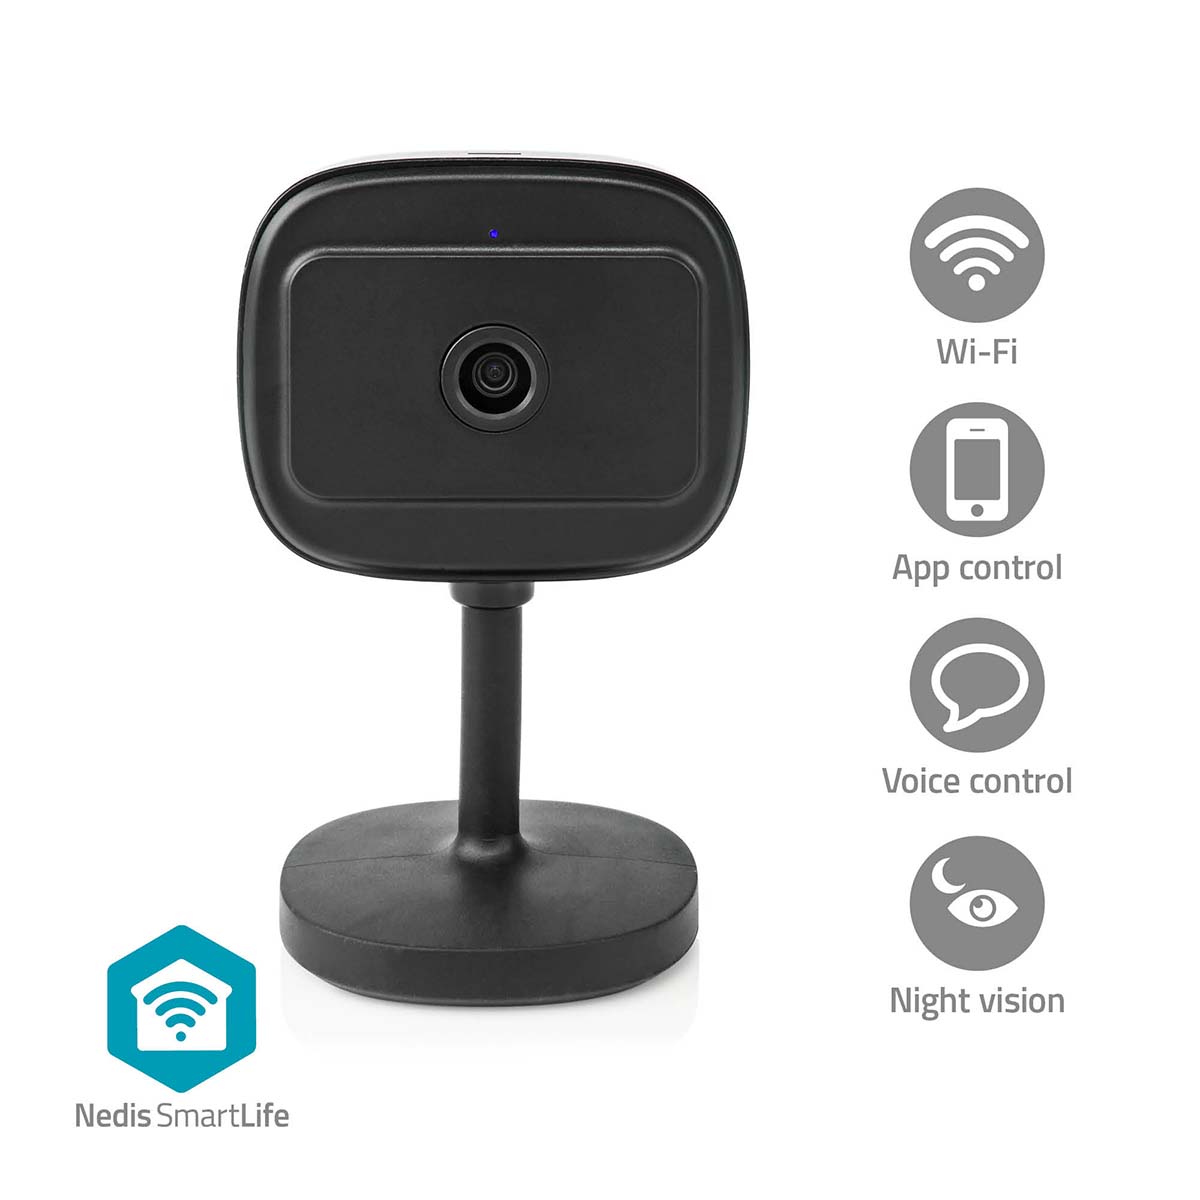 NEDIS SmartLife Vnitřní Kamera | Wi-Fi | Full HD 1080p | Cloudové Úložiště (volitelně) / microSD (není součástí dodávky) / Onvif | Se snímačem pohybu | Noční vidění